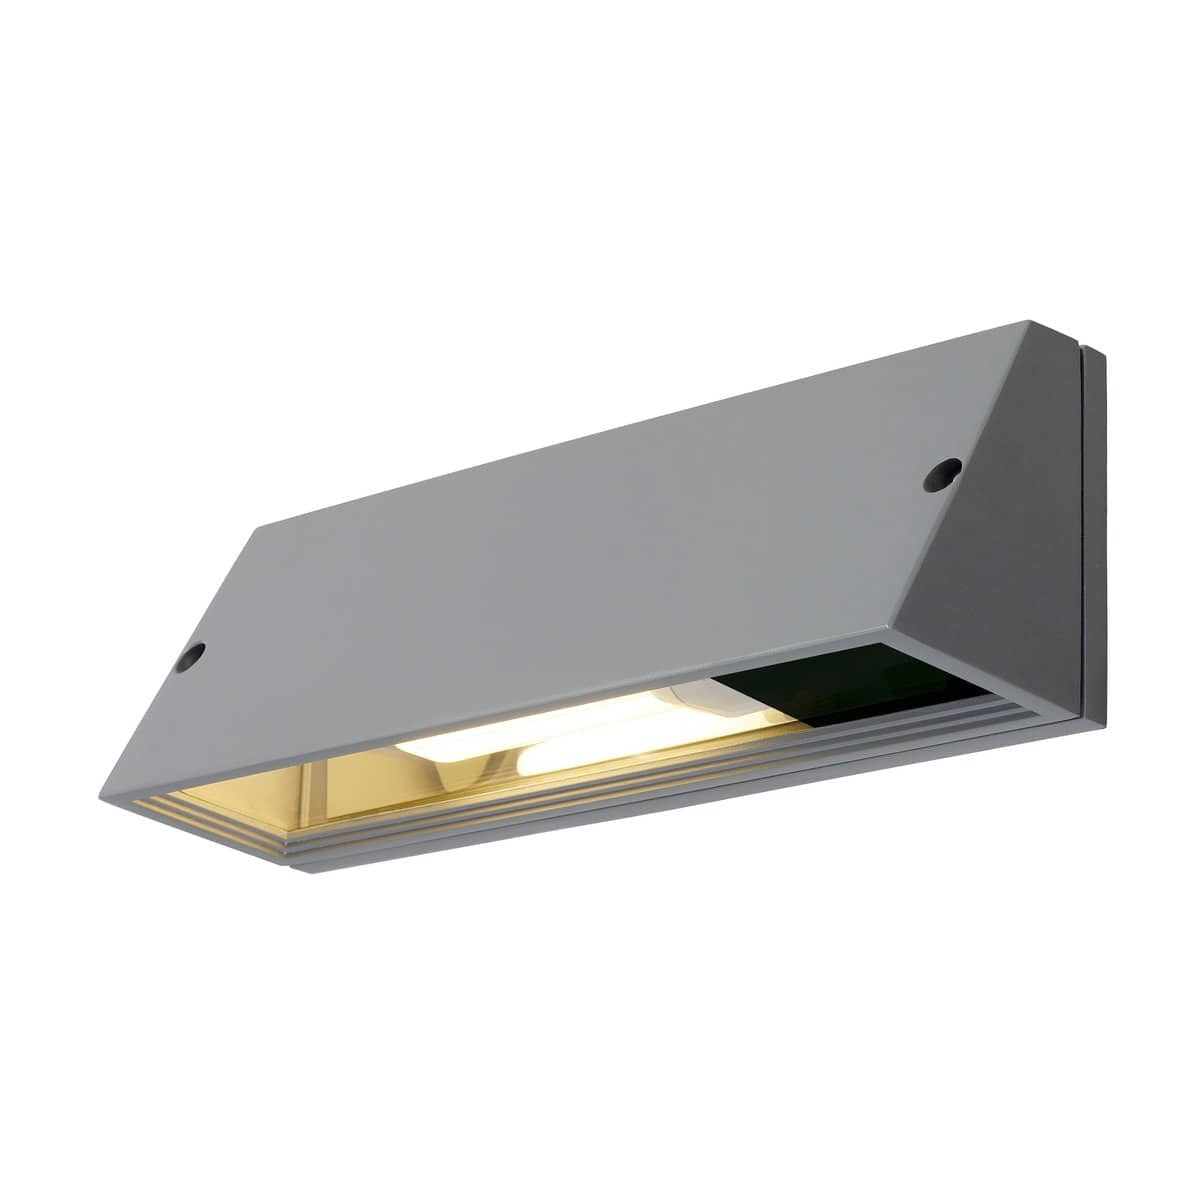 SLV PEMA - Outdoor wall lighting - Grey - Aluminium - IP65 - Facade - I